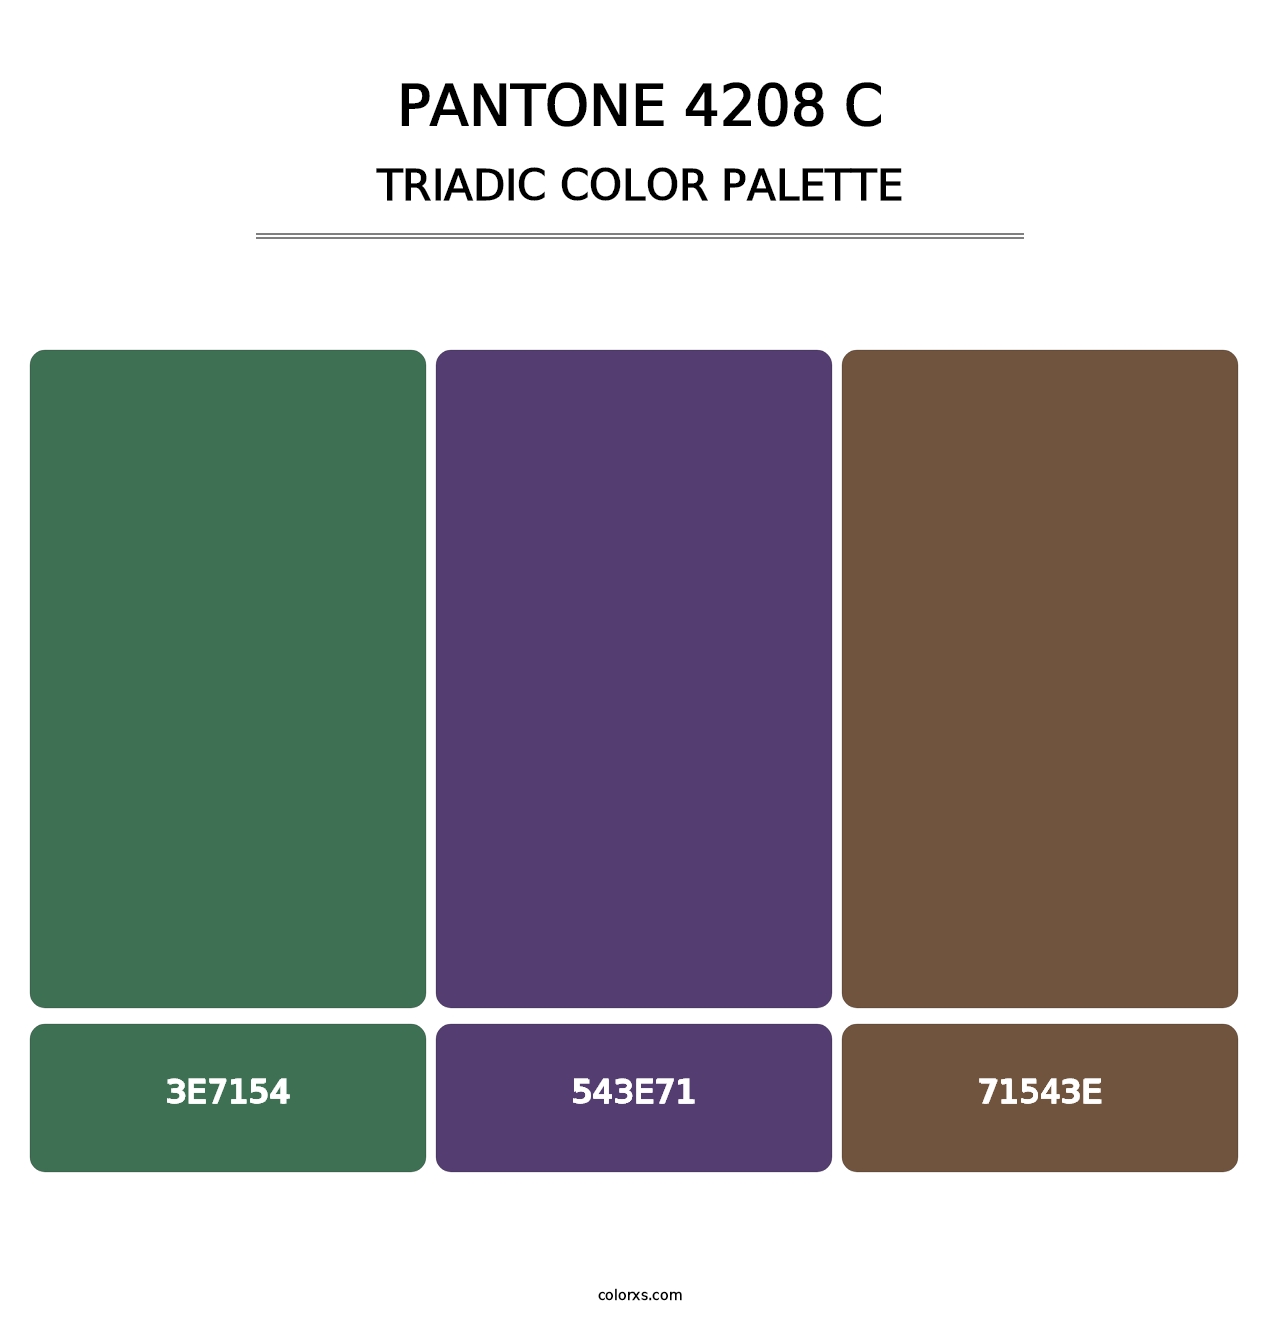 PANTONE 4208 C - Triadic Color Palette